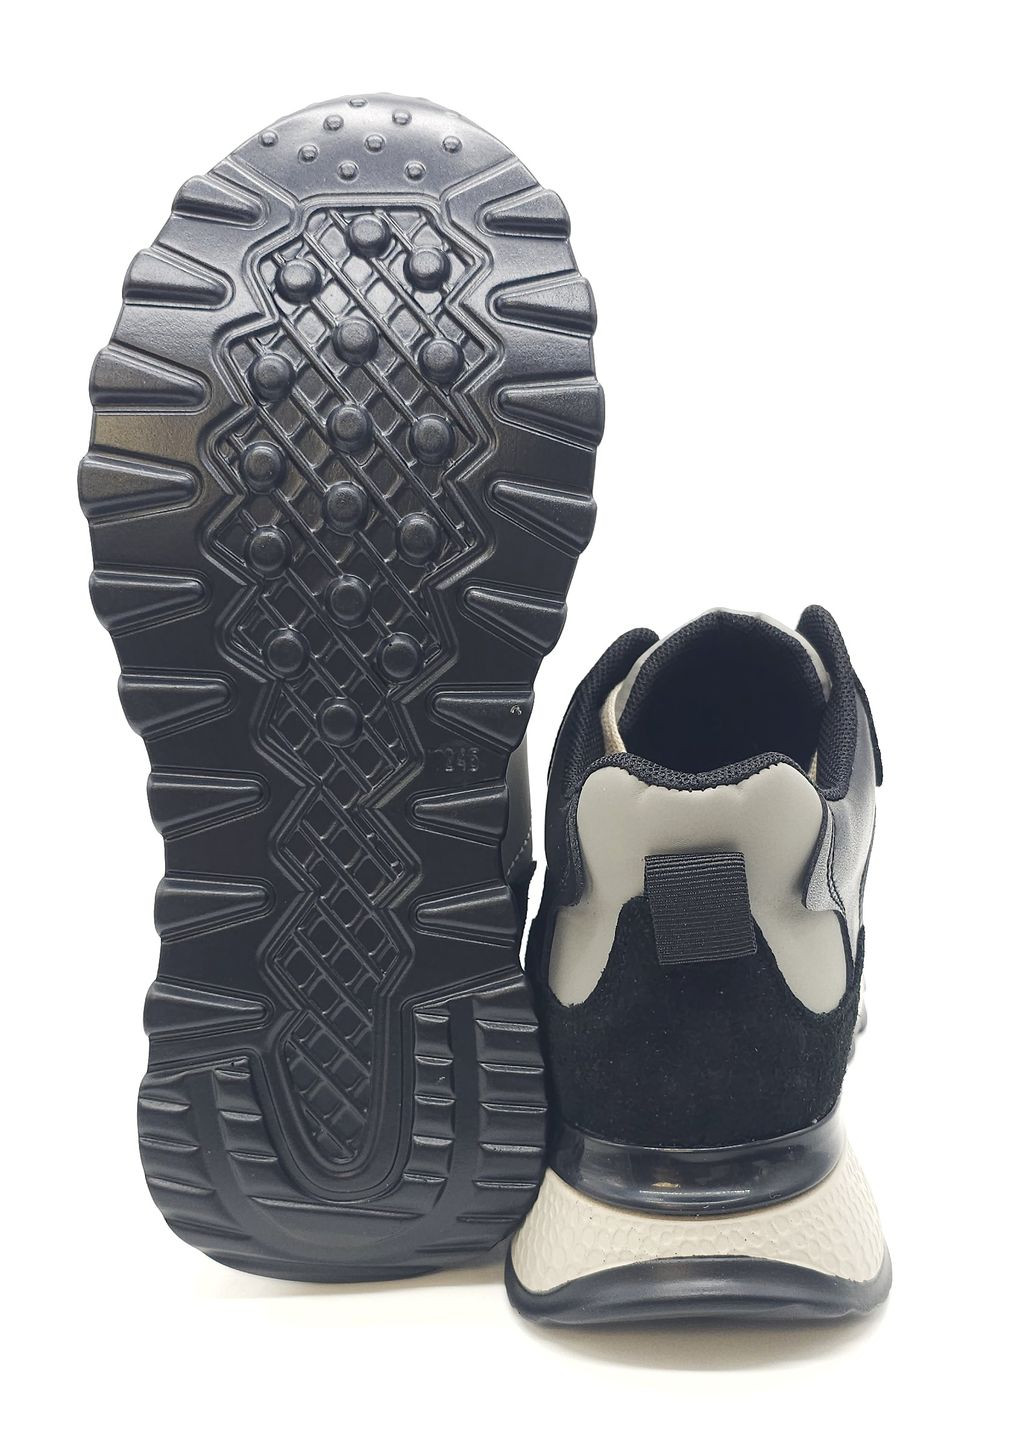 Черные всесезонные женские кроссовки черные кожаные l-11-44 23 см(р) Lonza